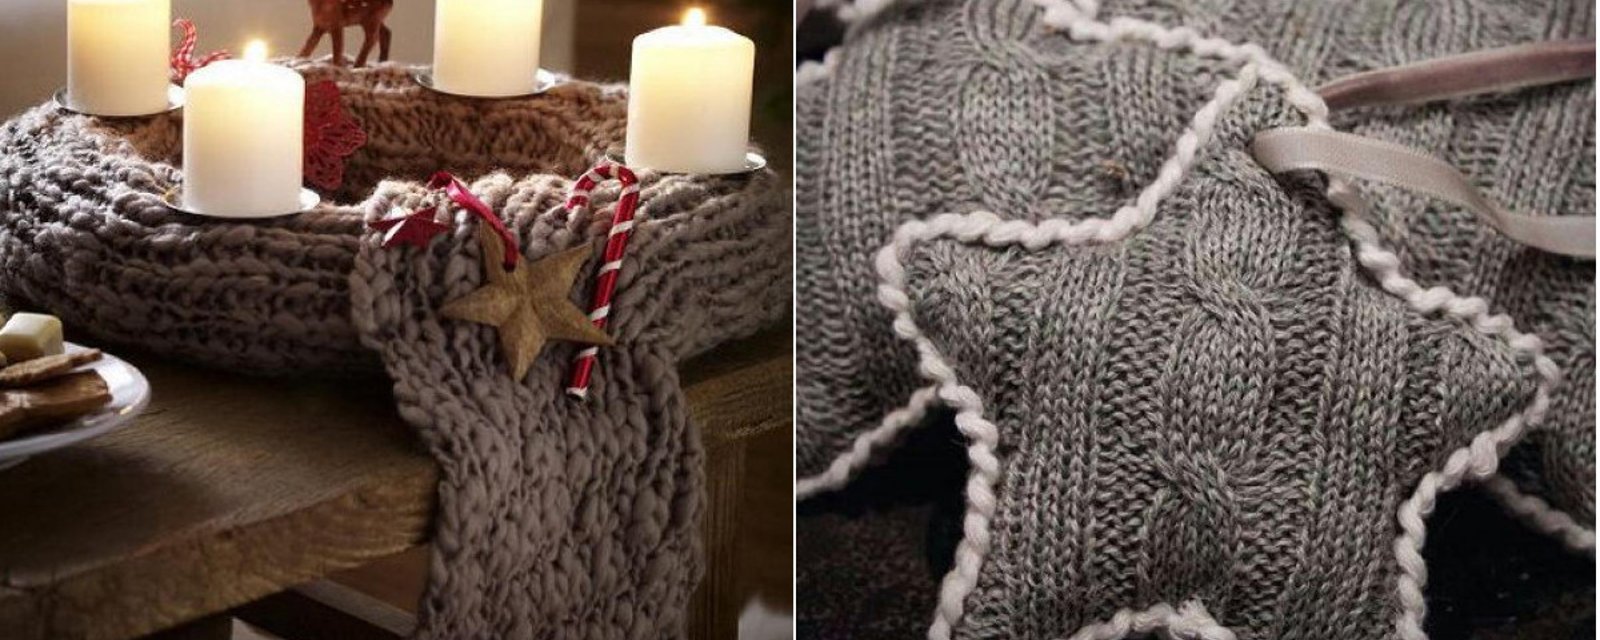 Récupérez vos vieux tricots de laine et transformez-les en décoration hivernale. 16 projets pour vous inspirer.